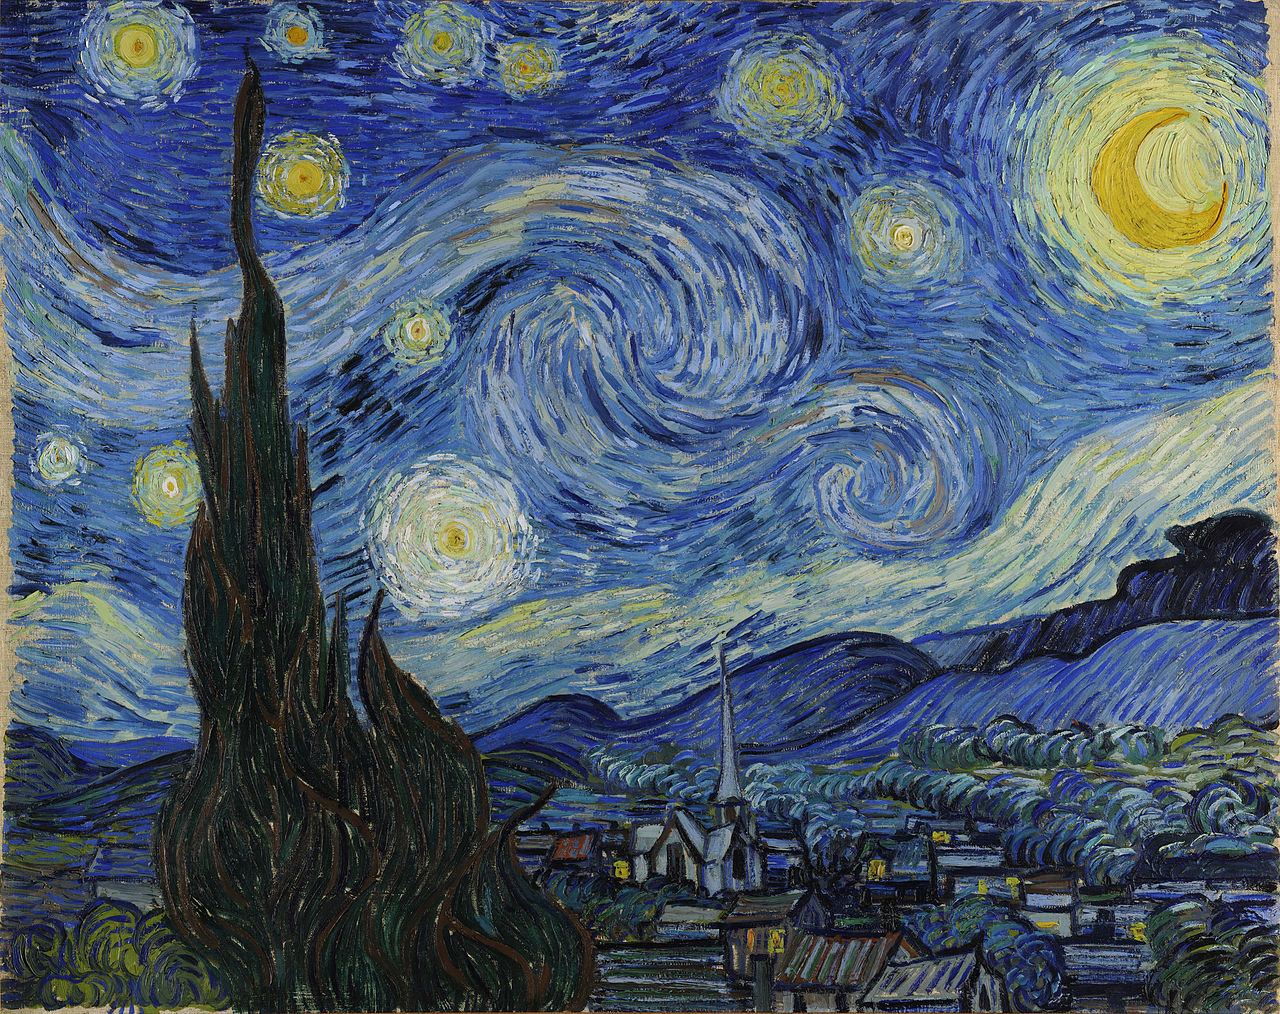 Звездная ночь by Винсе́нт Виллем Ван Гог - 1889 -  73,7 × 92,1 см 